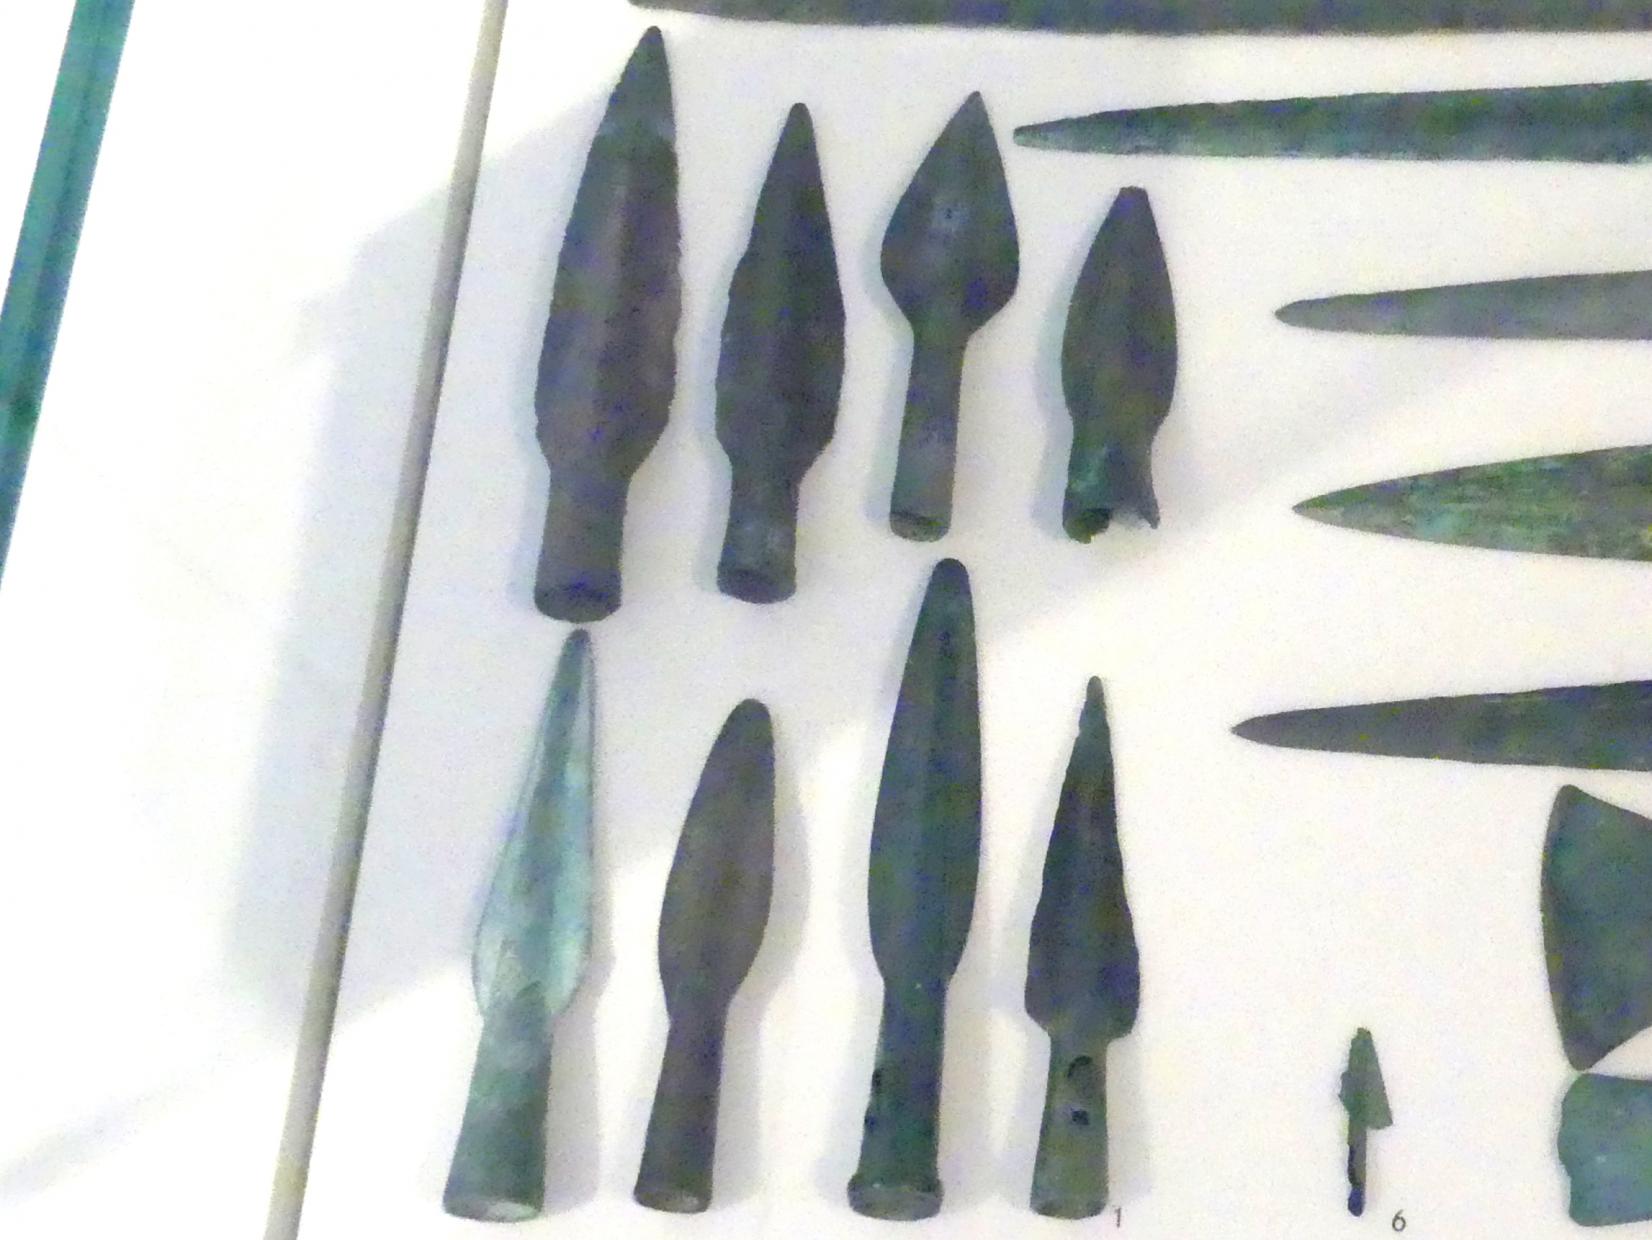 Lanzenspitzen, Späte (Jüngere) Bronzezeit, 1500 - 700 v. Chr., 1300 - 800 v. Chr.